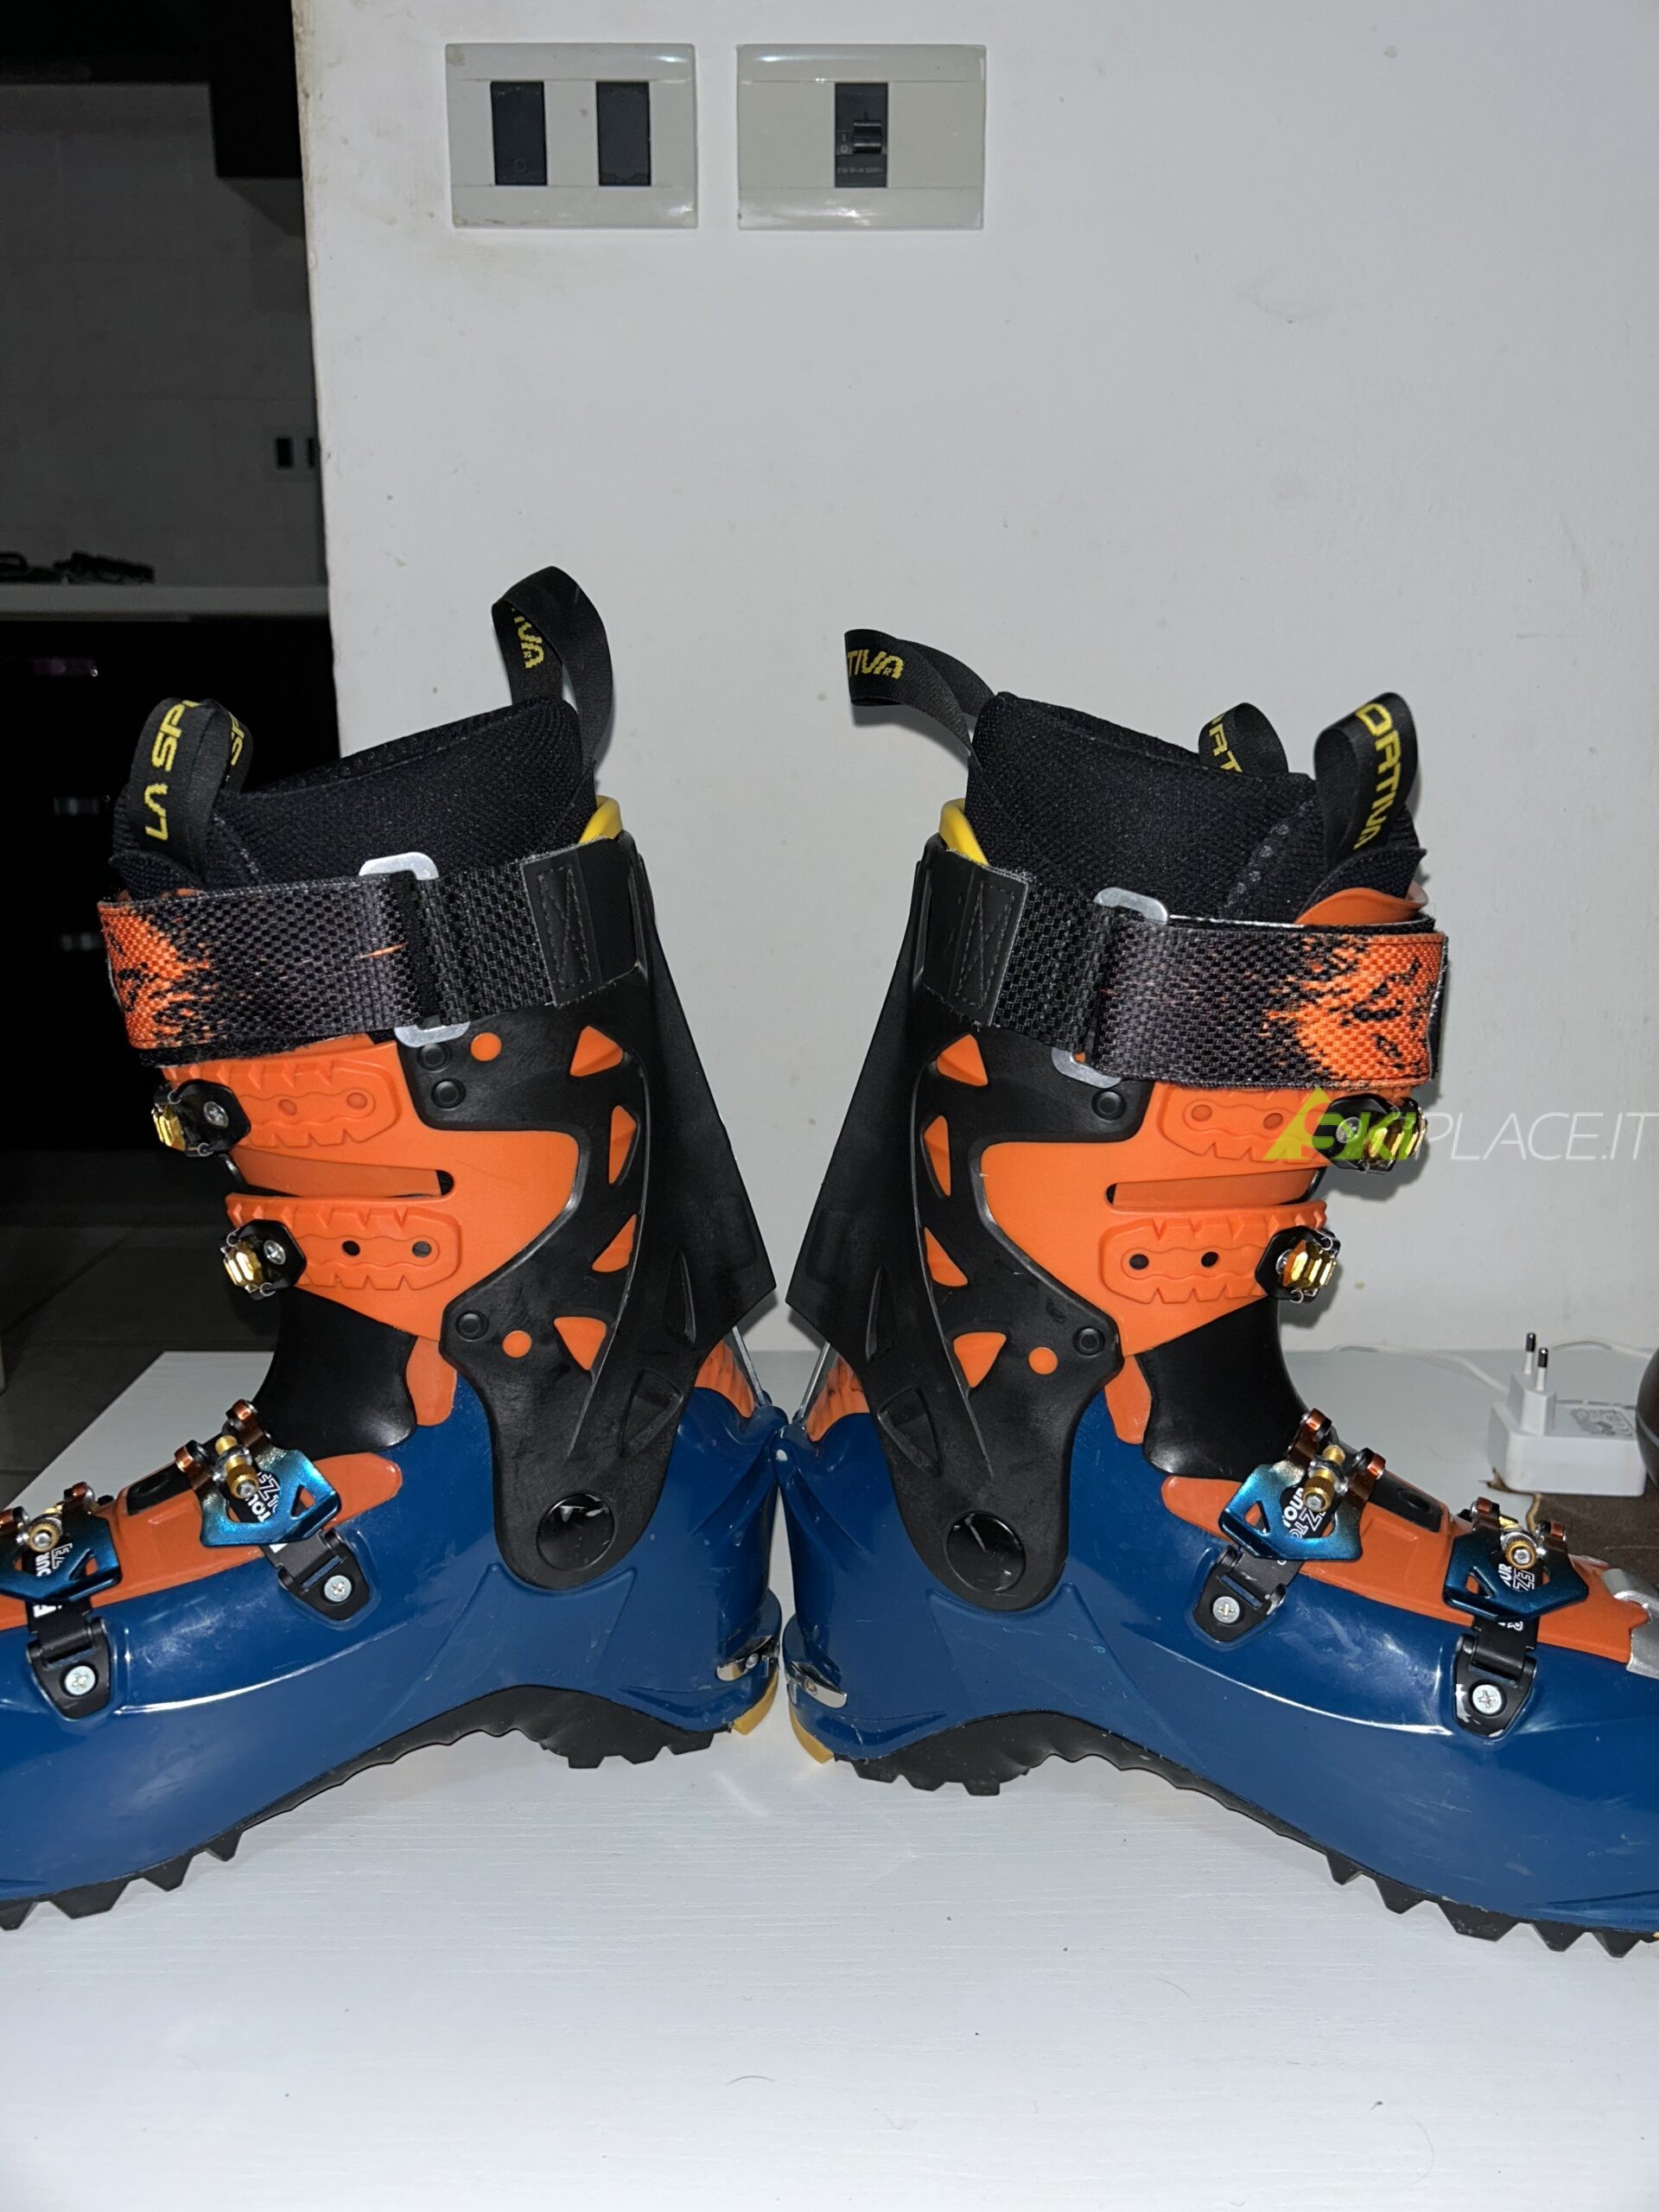 Vendo scarponi sci alpinismo La sportiva synchro